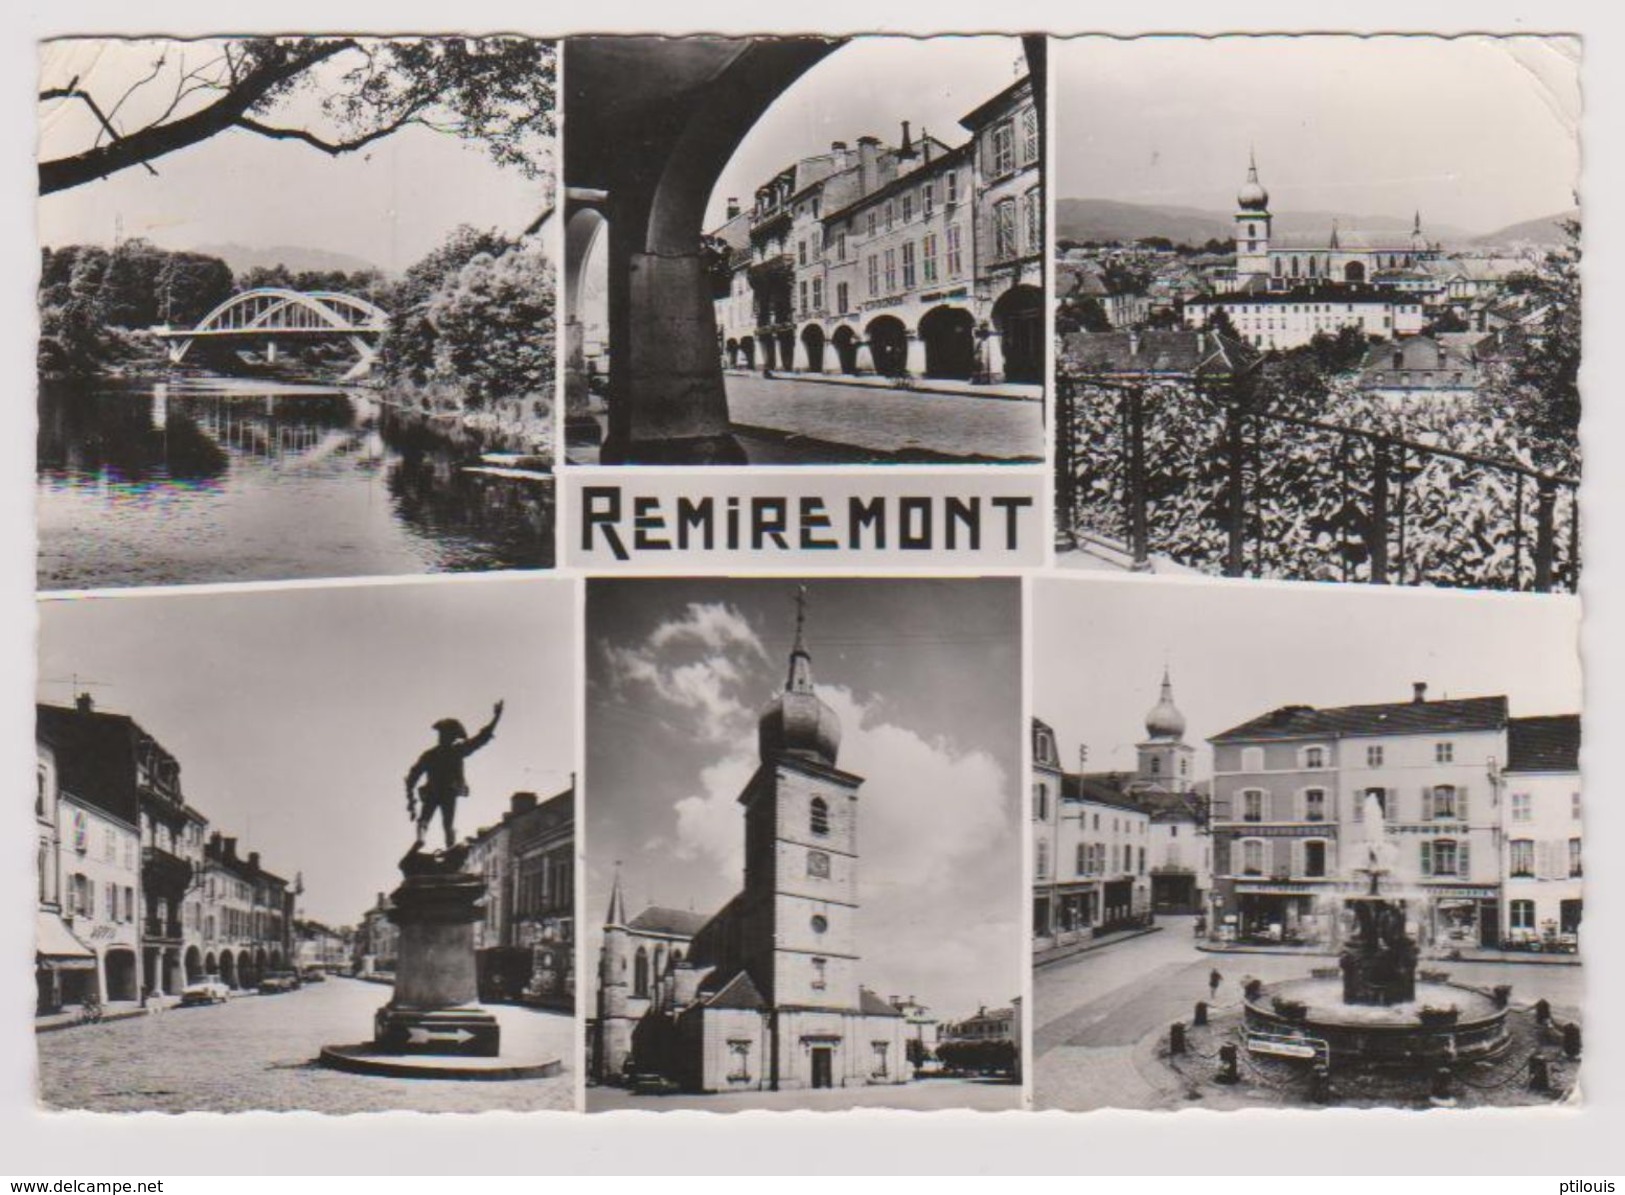 REMIREMONT - 7360 - Pont, Arcades, Vue Générale, Monument Du Volontaire, Eglise, Fontaine - (Edit De Luxe "Estel") - Remiremont